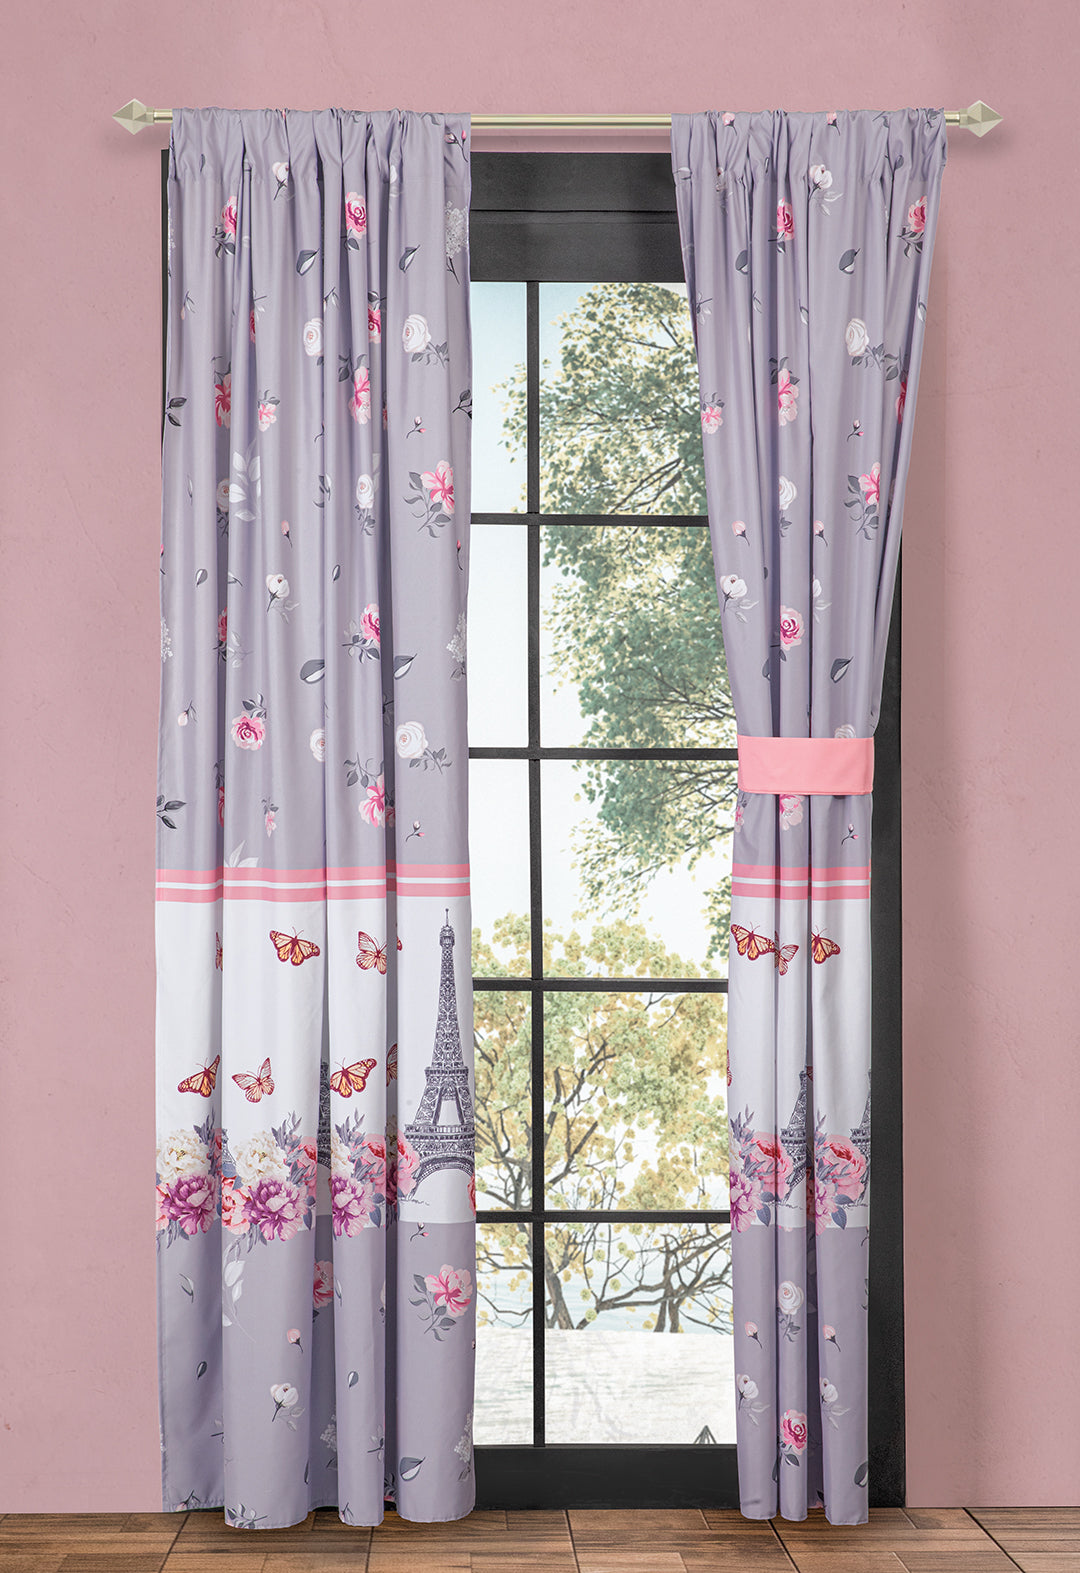 El juego de cortinas Camil es tan lindo y versatil, en colores pastel.